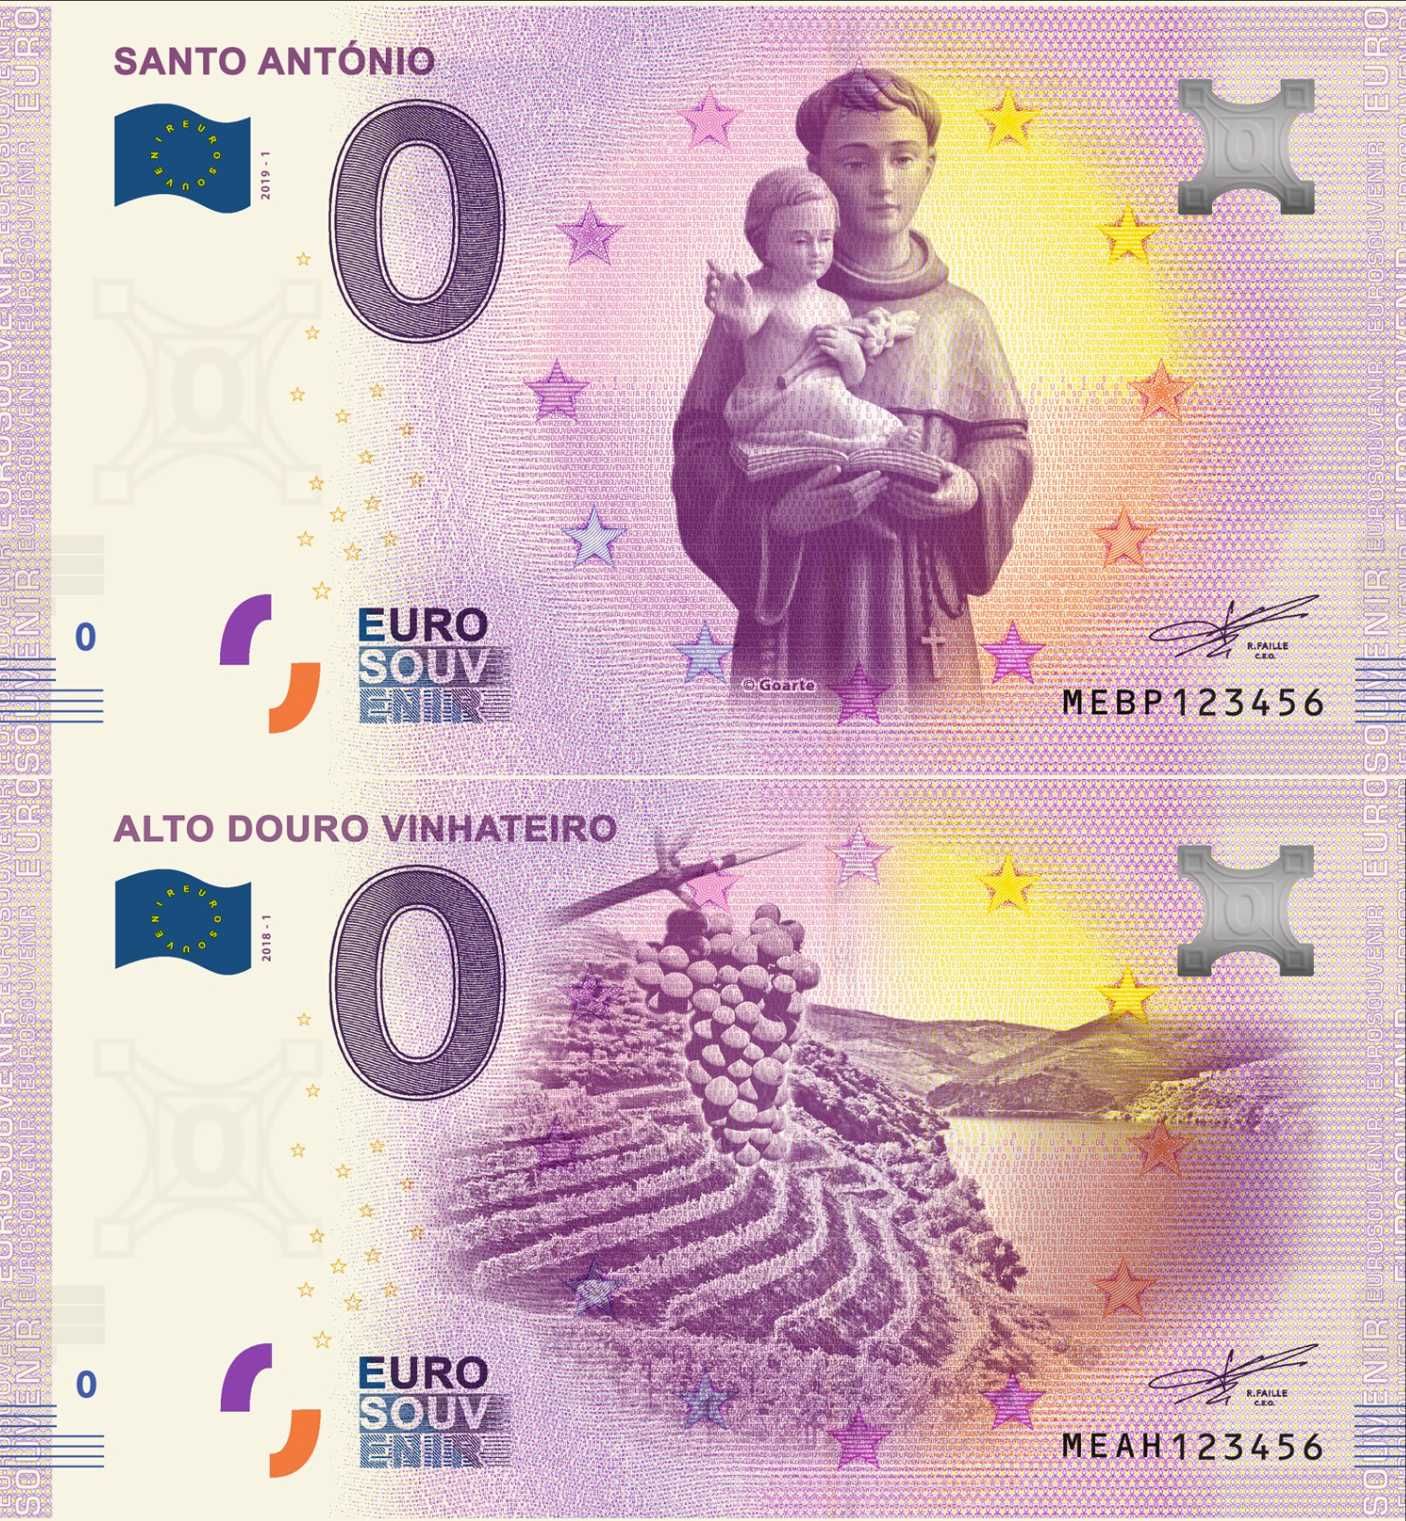 Euro souvenir notas zero 0 euro Portugal